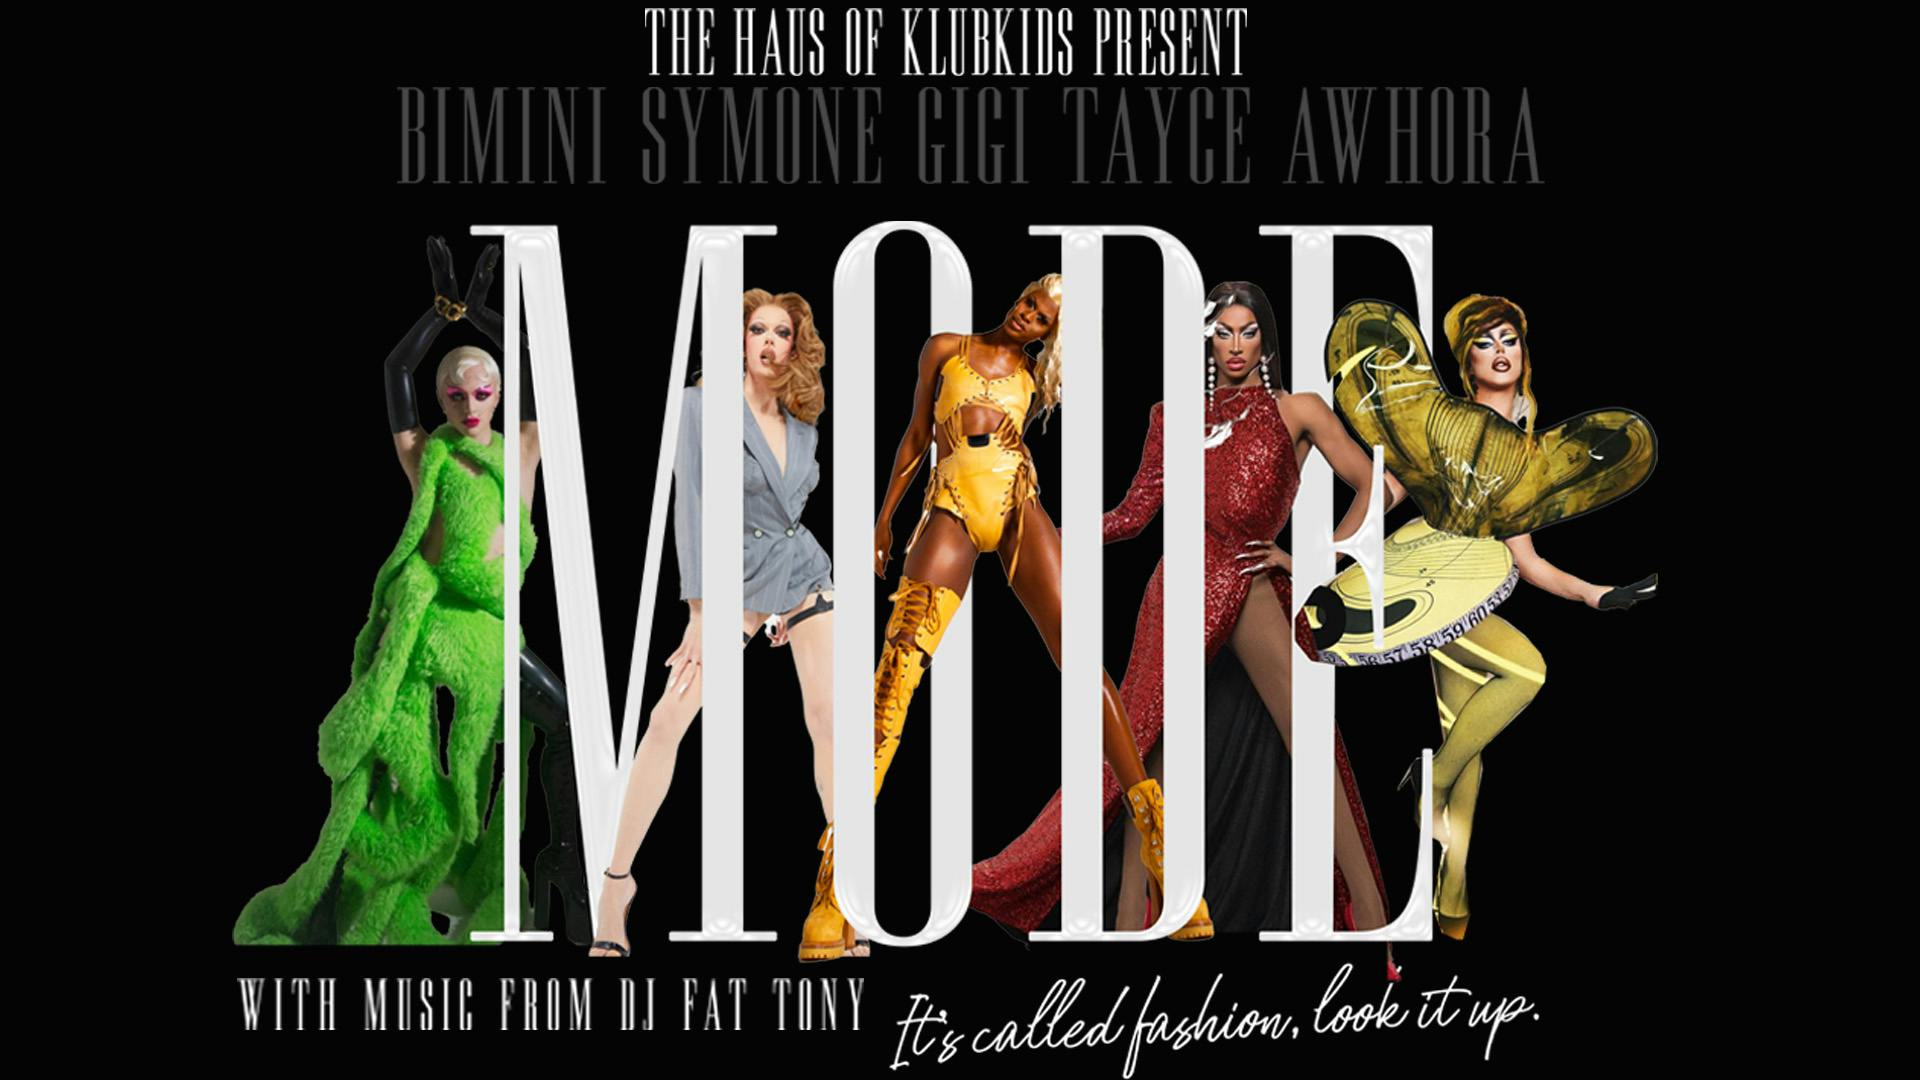 Mode featuring Symonde, Gigi Goode, Tayce, Bimini And Awhora